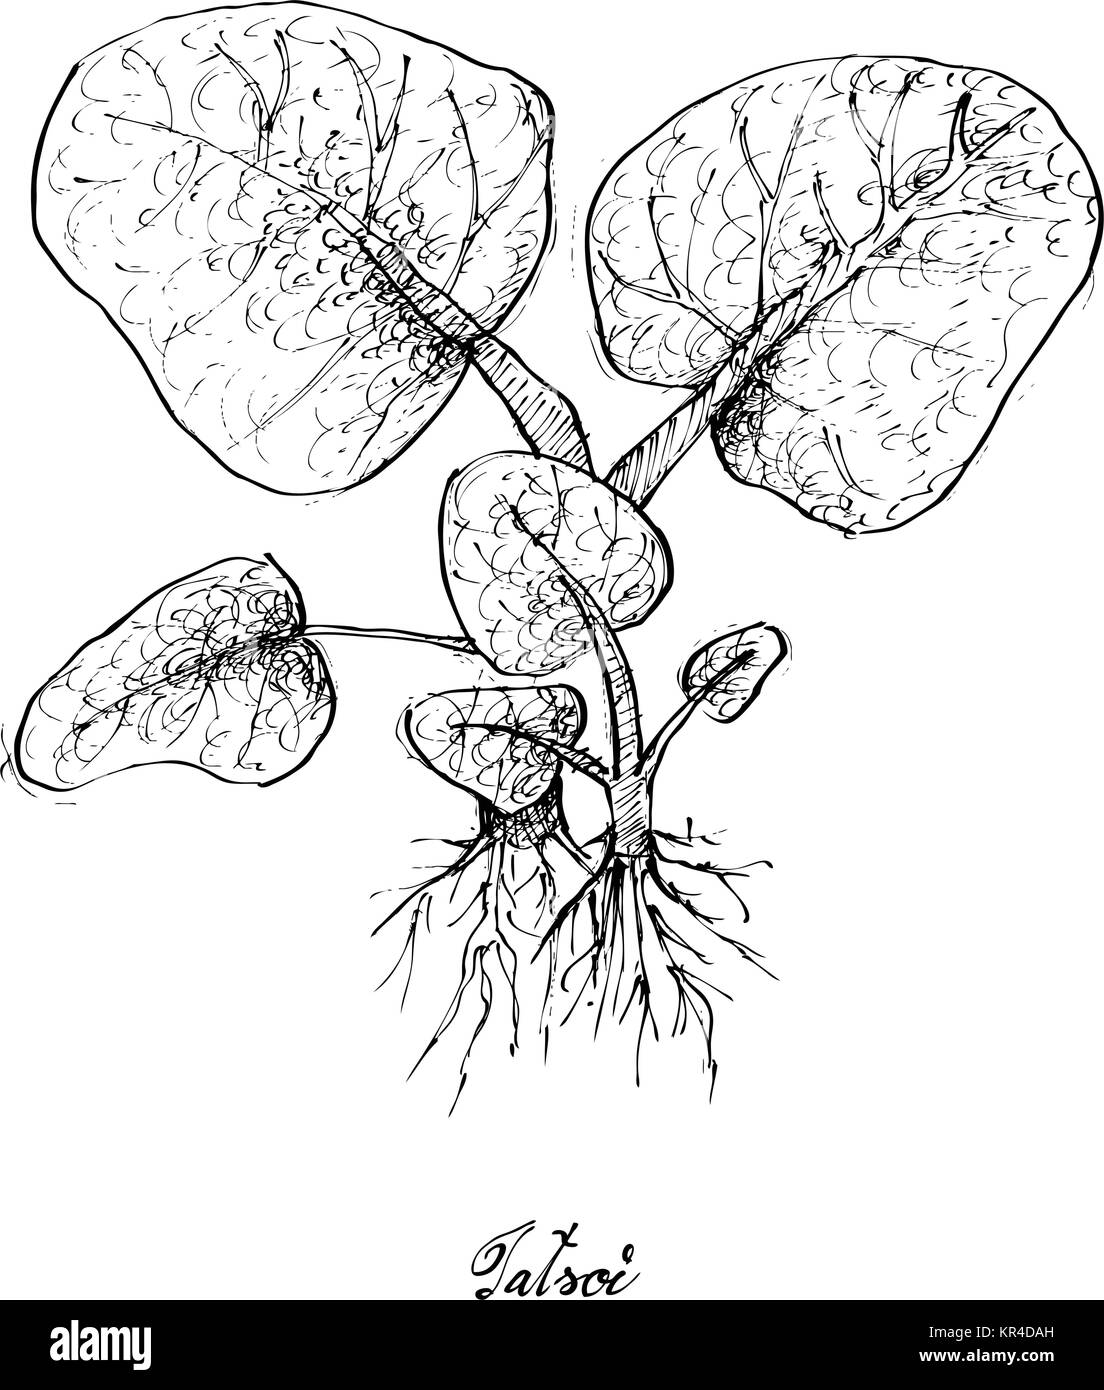 Salat, Illustration von Hand gezeichnete Skizze köstliche frische grüne Tatsoi Pflanze isoliert auf weißem Hintergrund. Stock Vektor